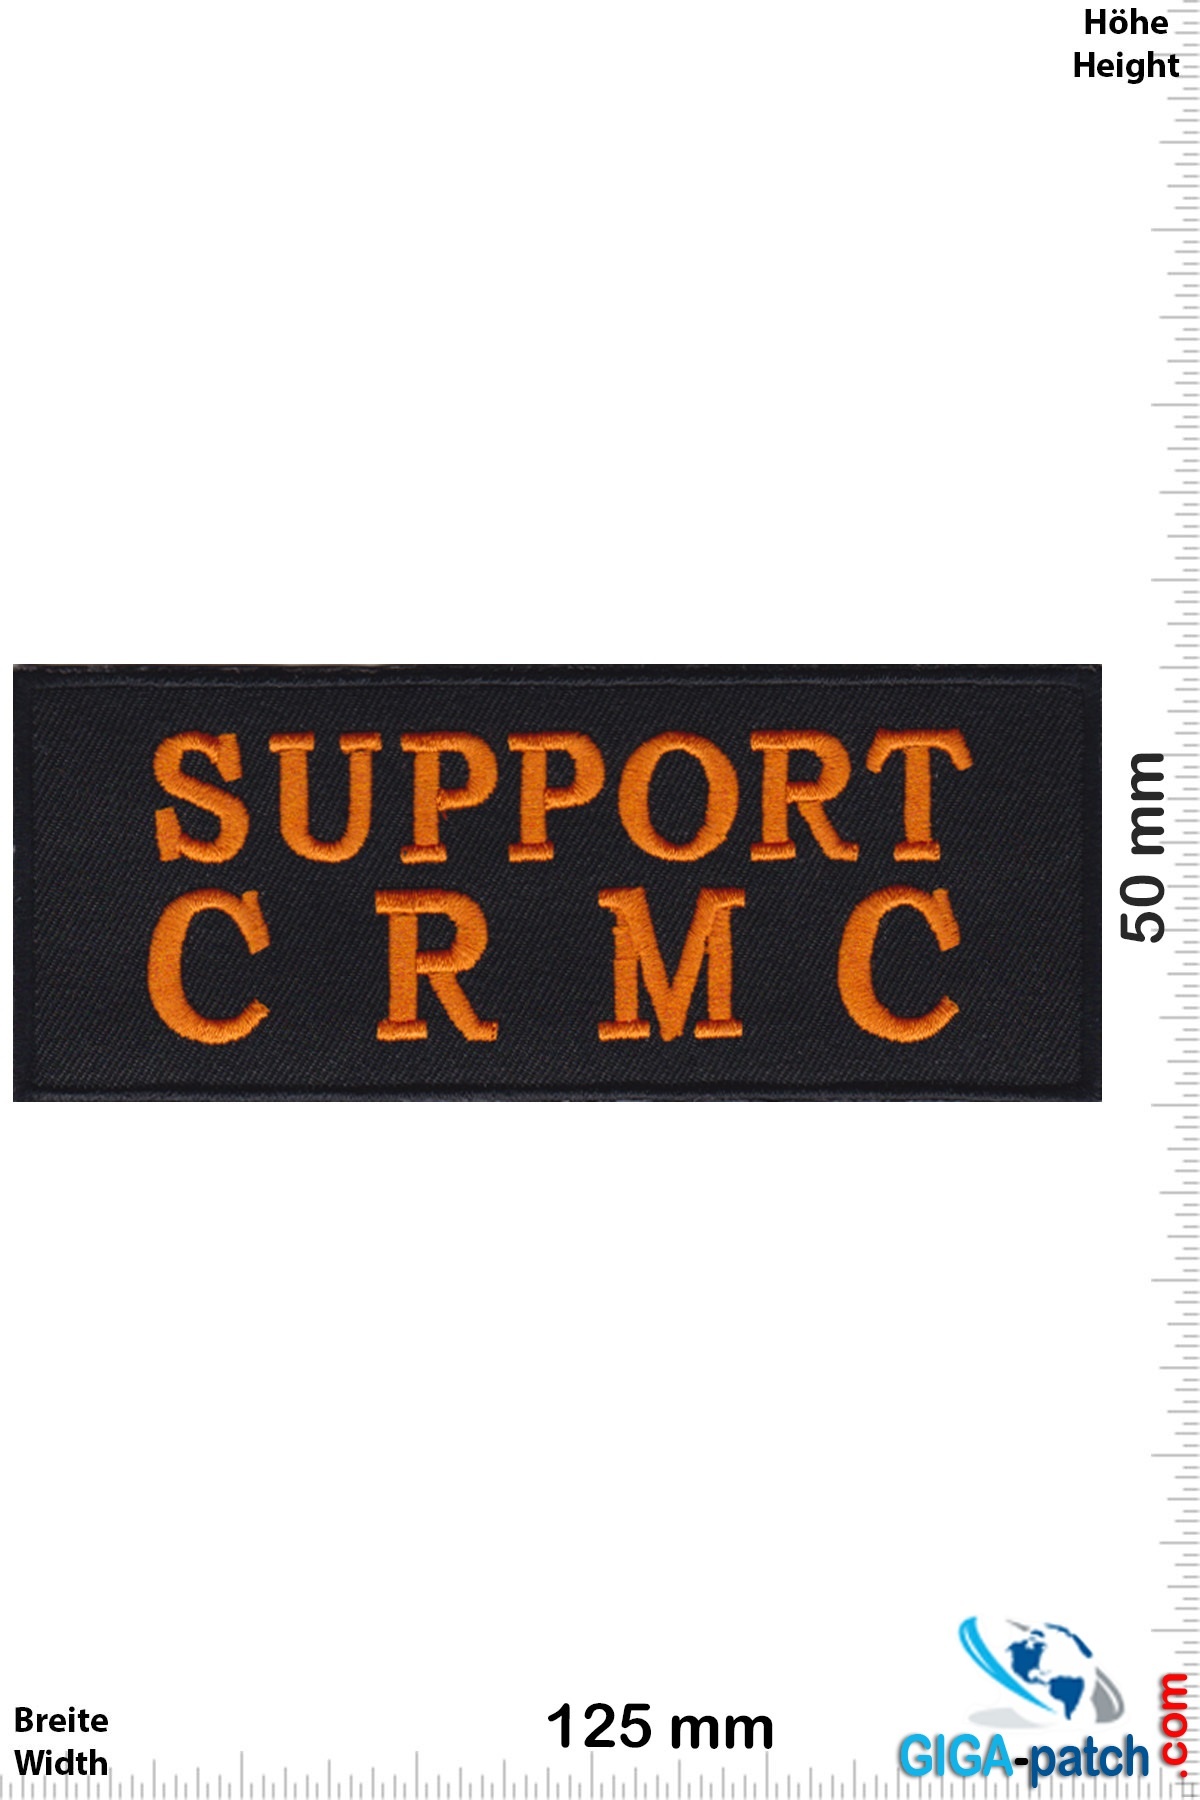 Sprüche, Claims Support -  C R M C